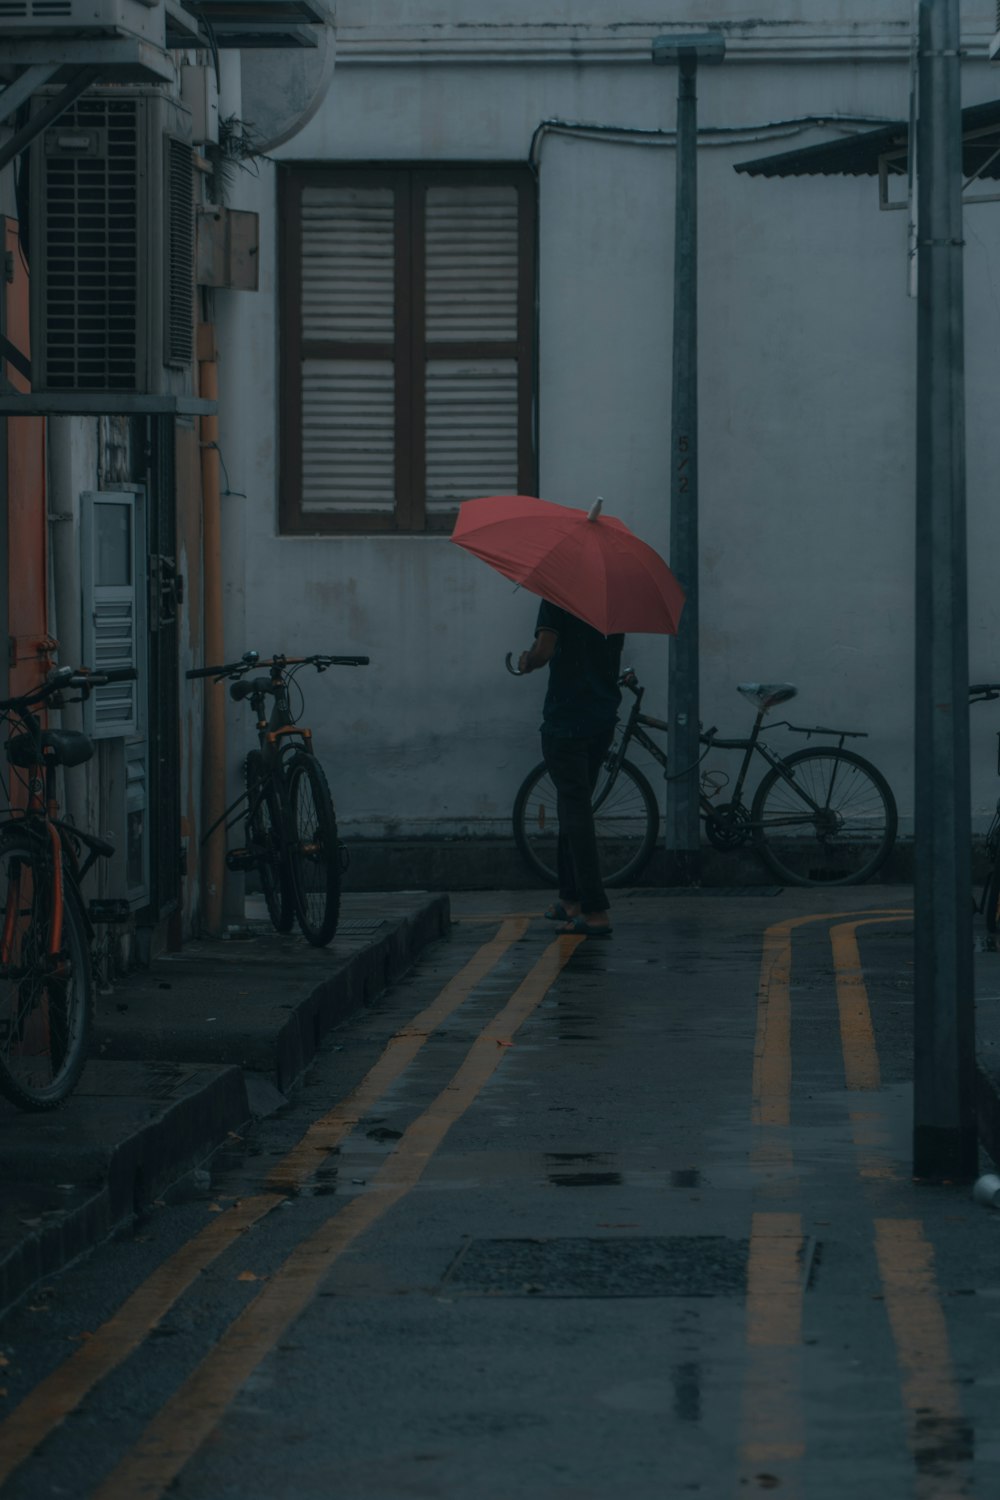 red umbrella on gray concrete floor